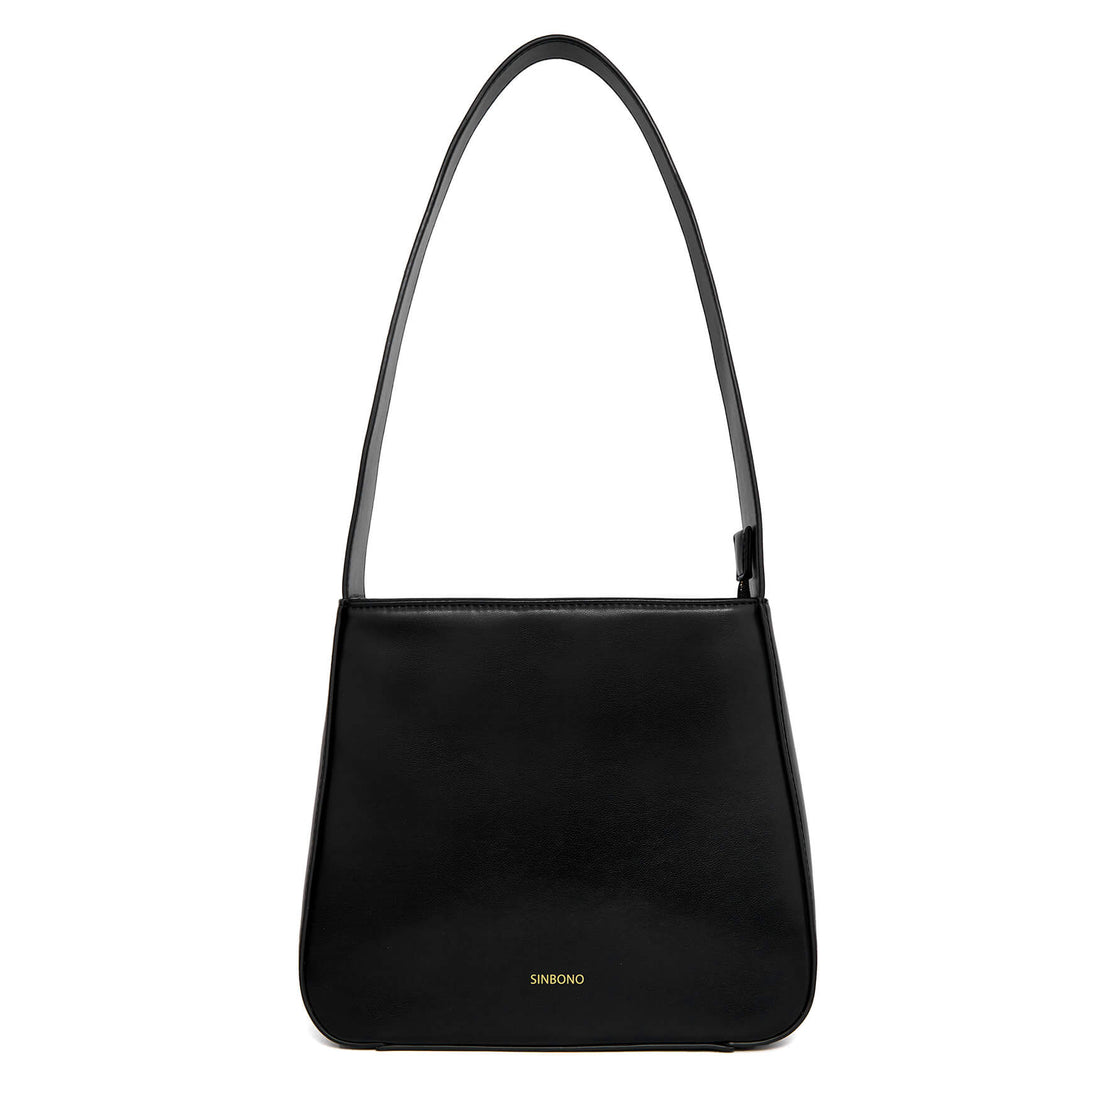 SINBONO Betty Shoulder Bag Black - Animal Free Shoulder Bag